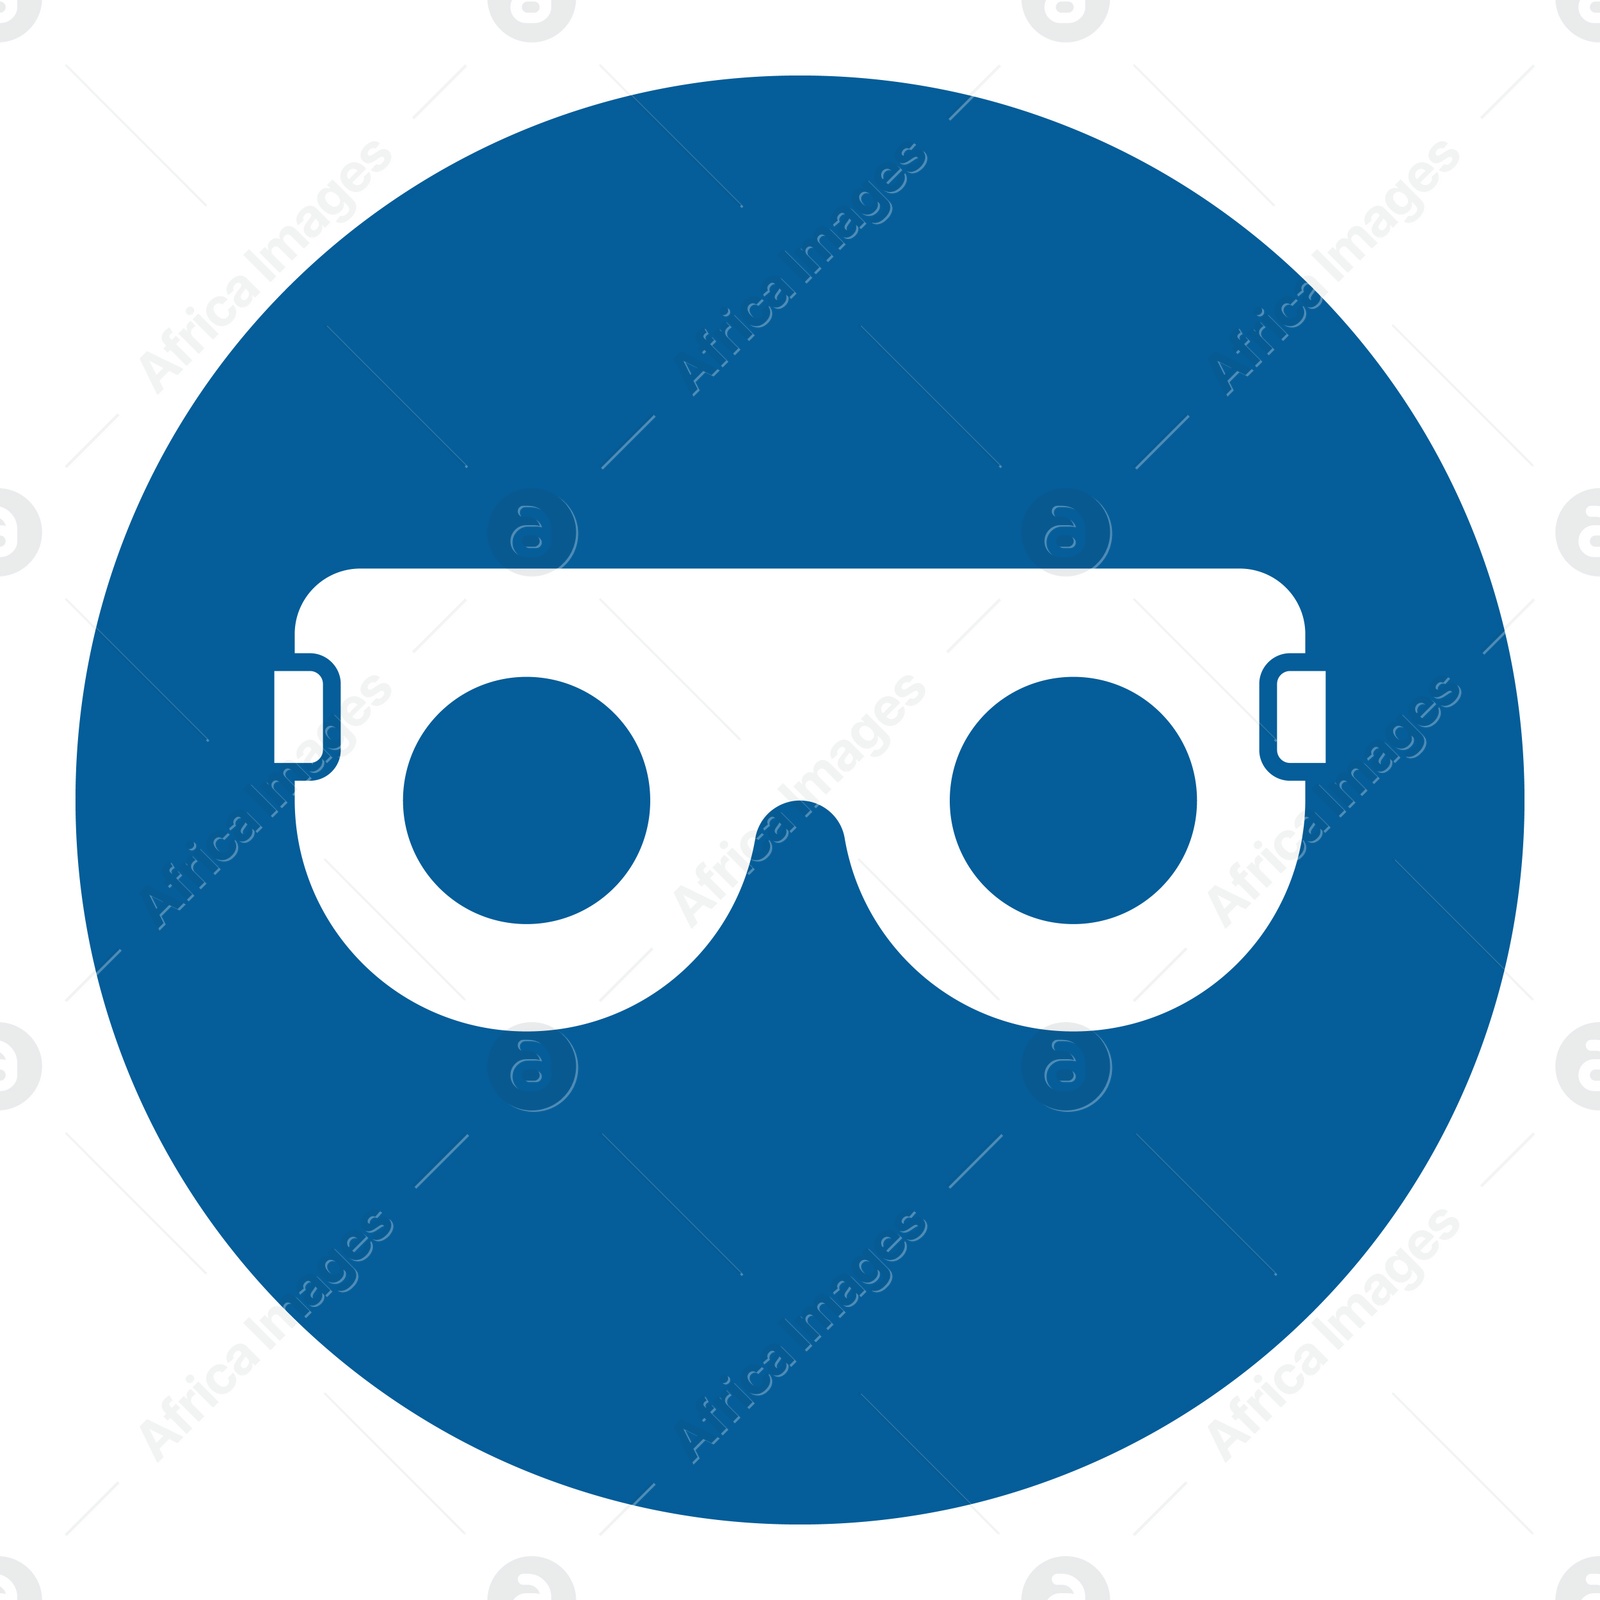 Image of International Maritime Organization (IMO) sign, illustration. Eye protection symbol